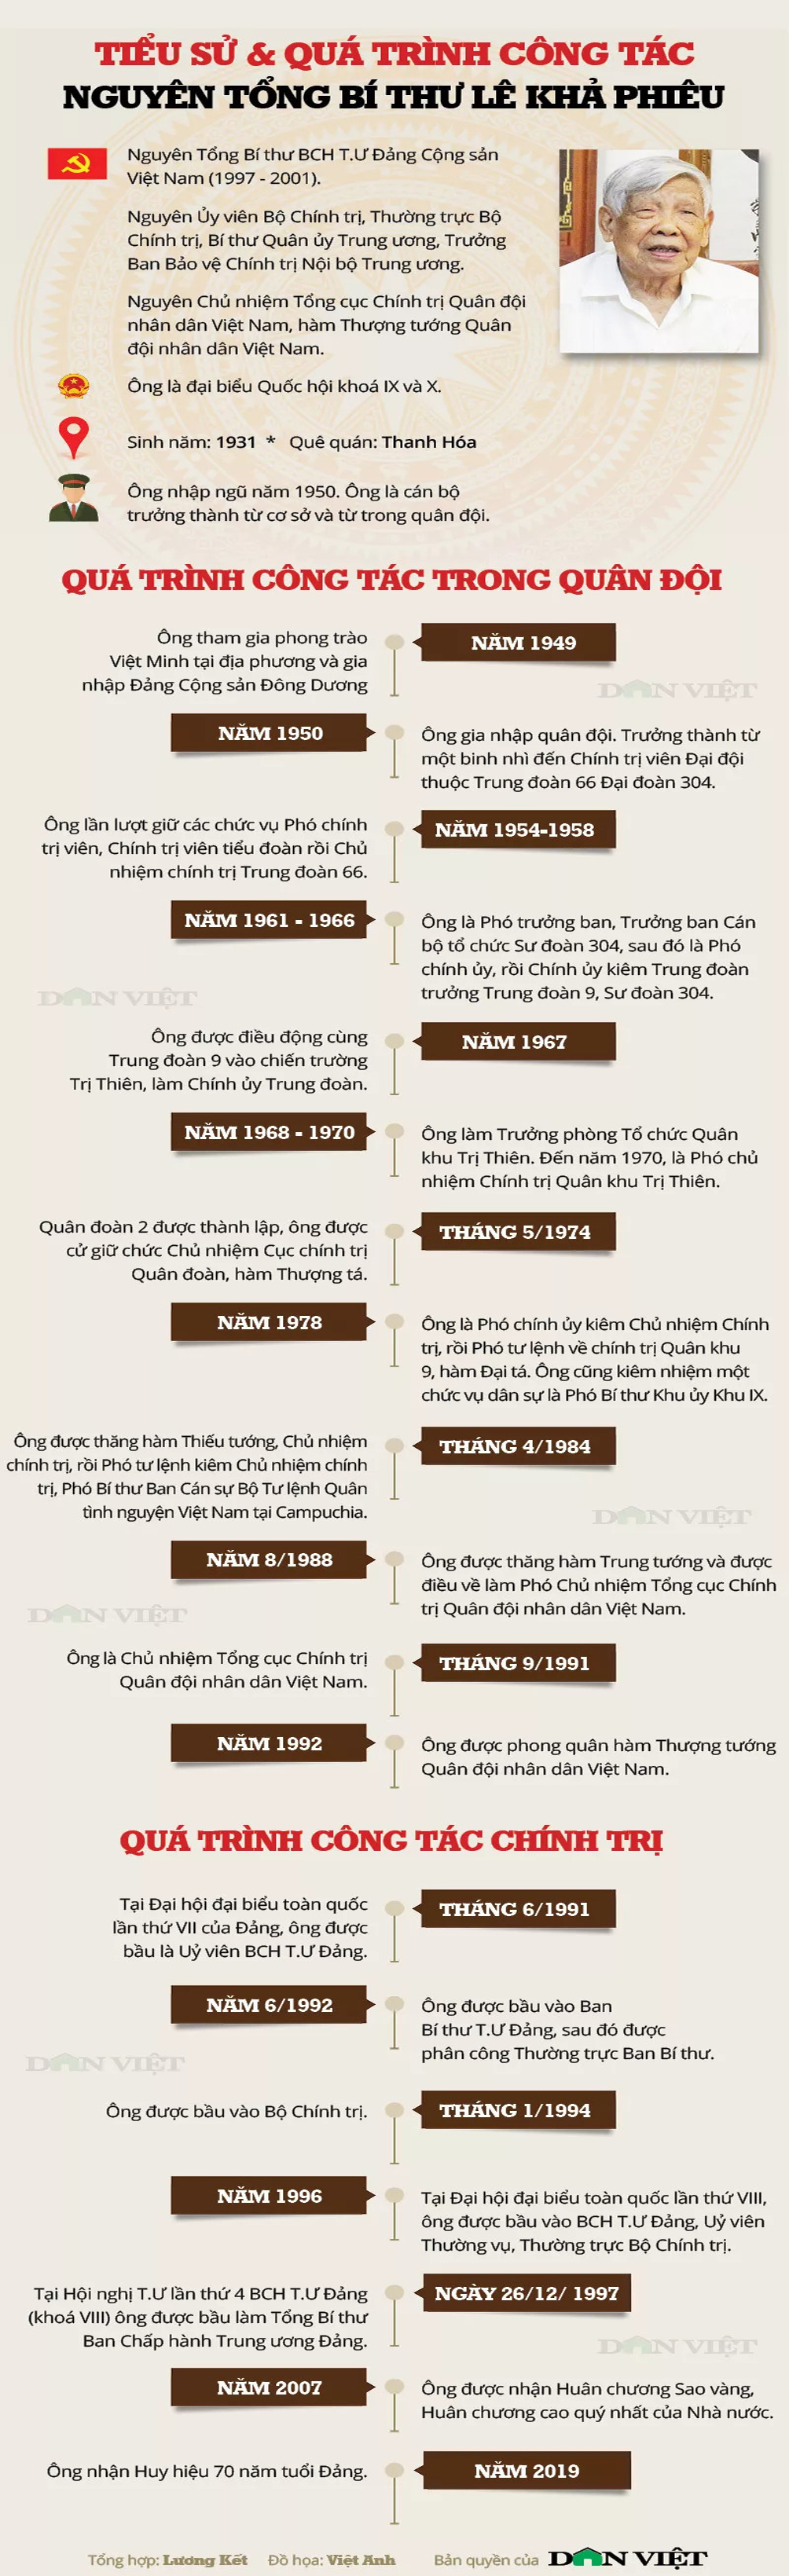 Infographic về tiểu sử và quá trình công tác của nguyên Tổng Bí thư Lê Khả Phiêu - 1